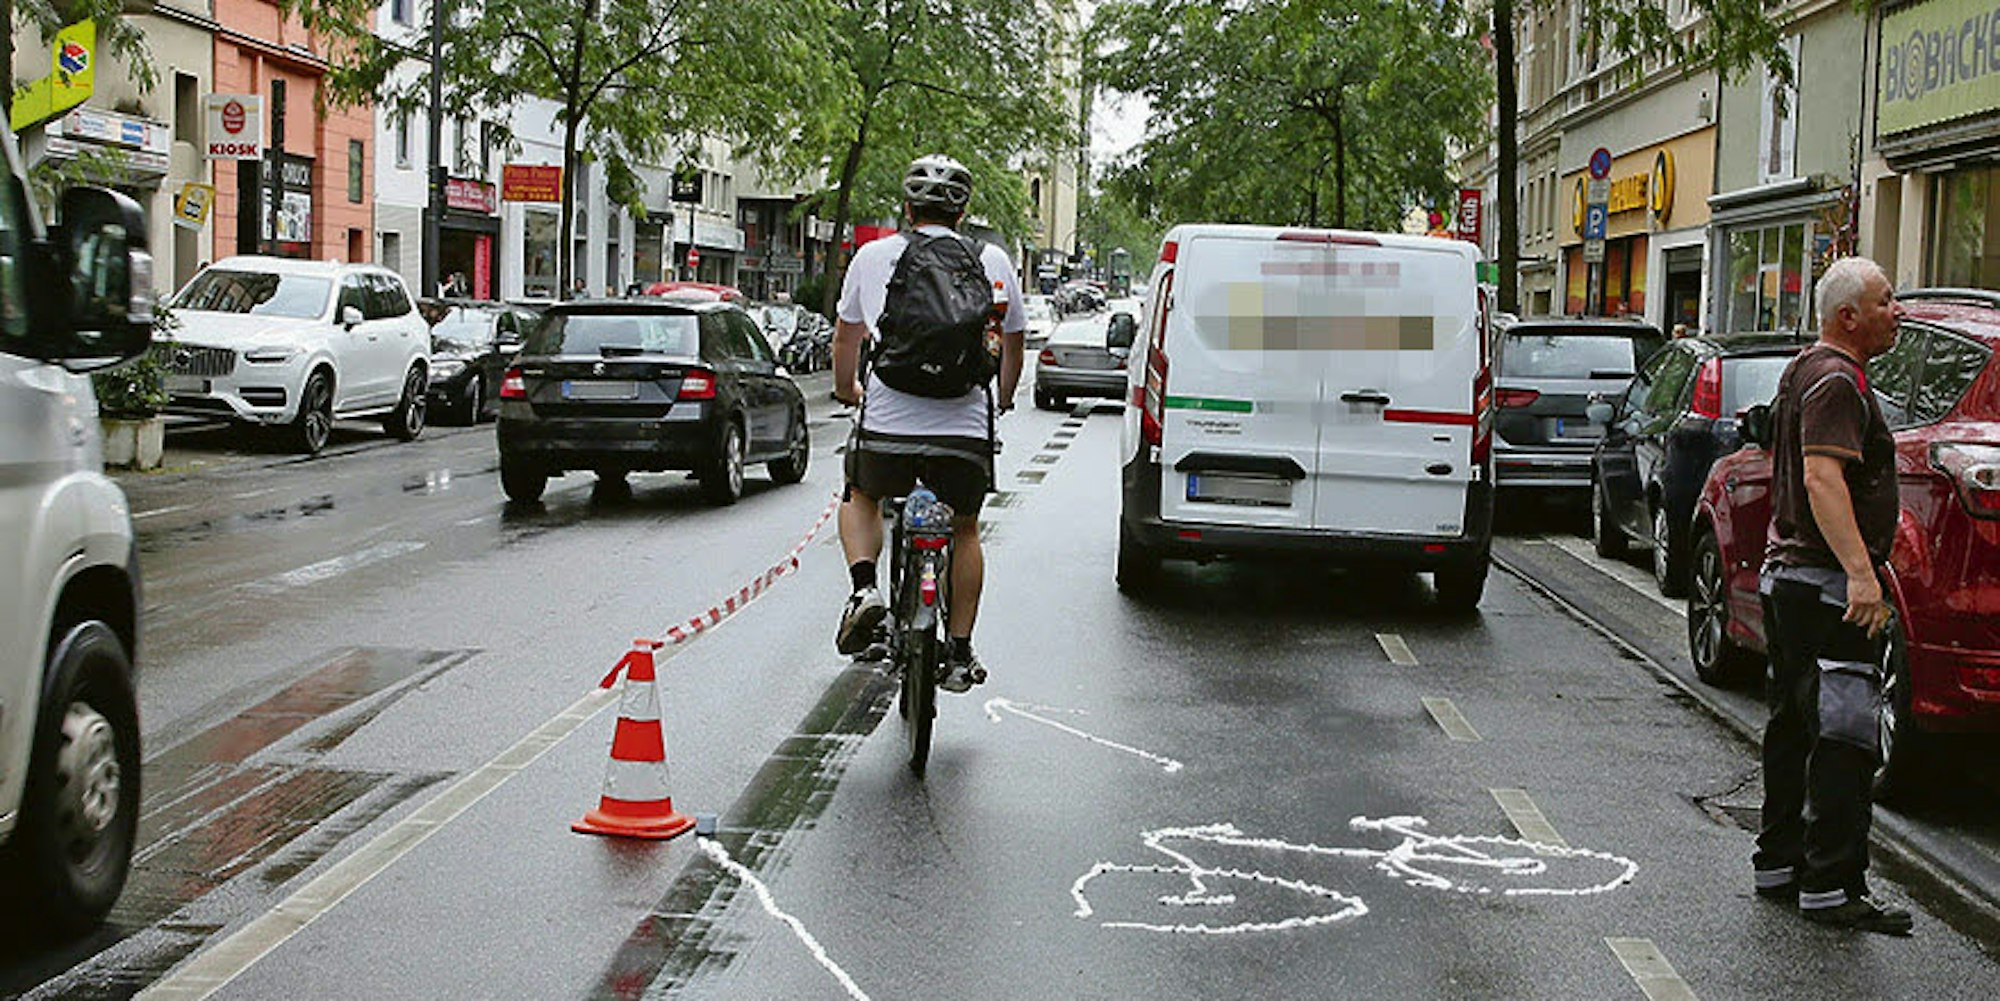 Parken in zweiter Reihe – auf der Neusser Straße immer ein Thema. Mitglieder der Guppe Agora Köln hatten 2018 mit einer Aktion auf die Risiken für andere Verkehrsteilnehmer hingewiesen.